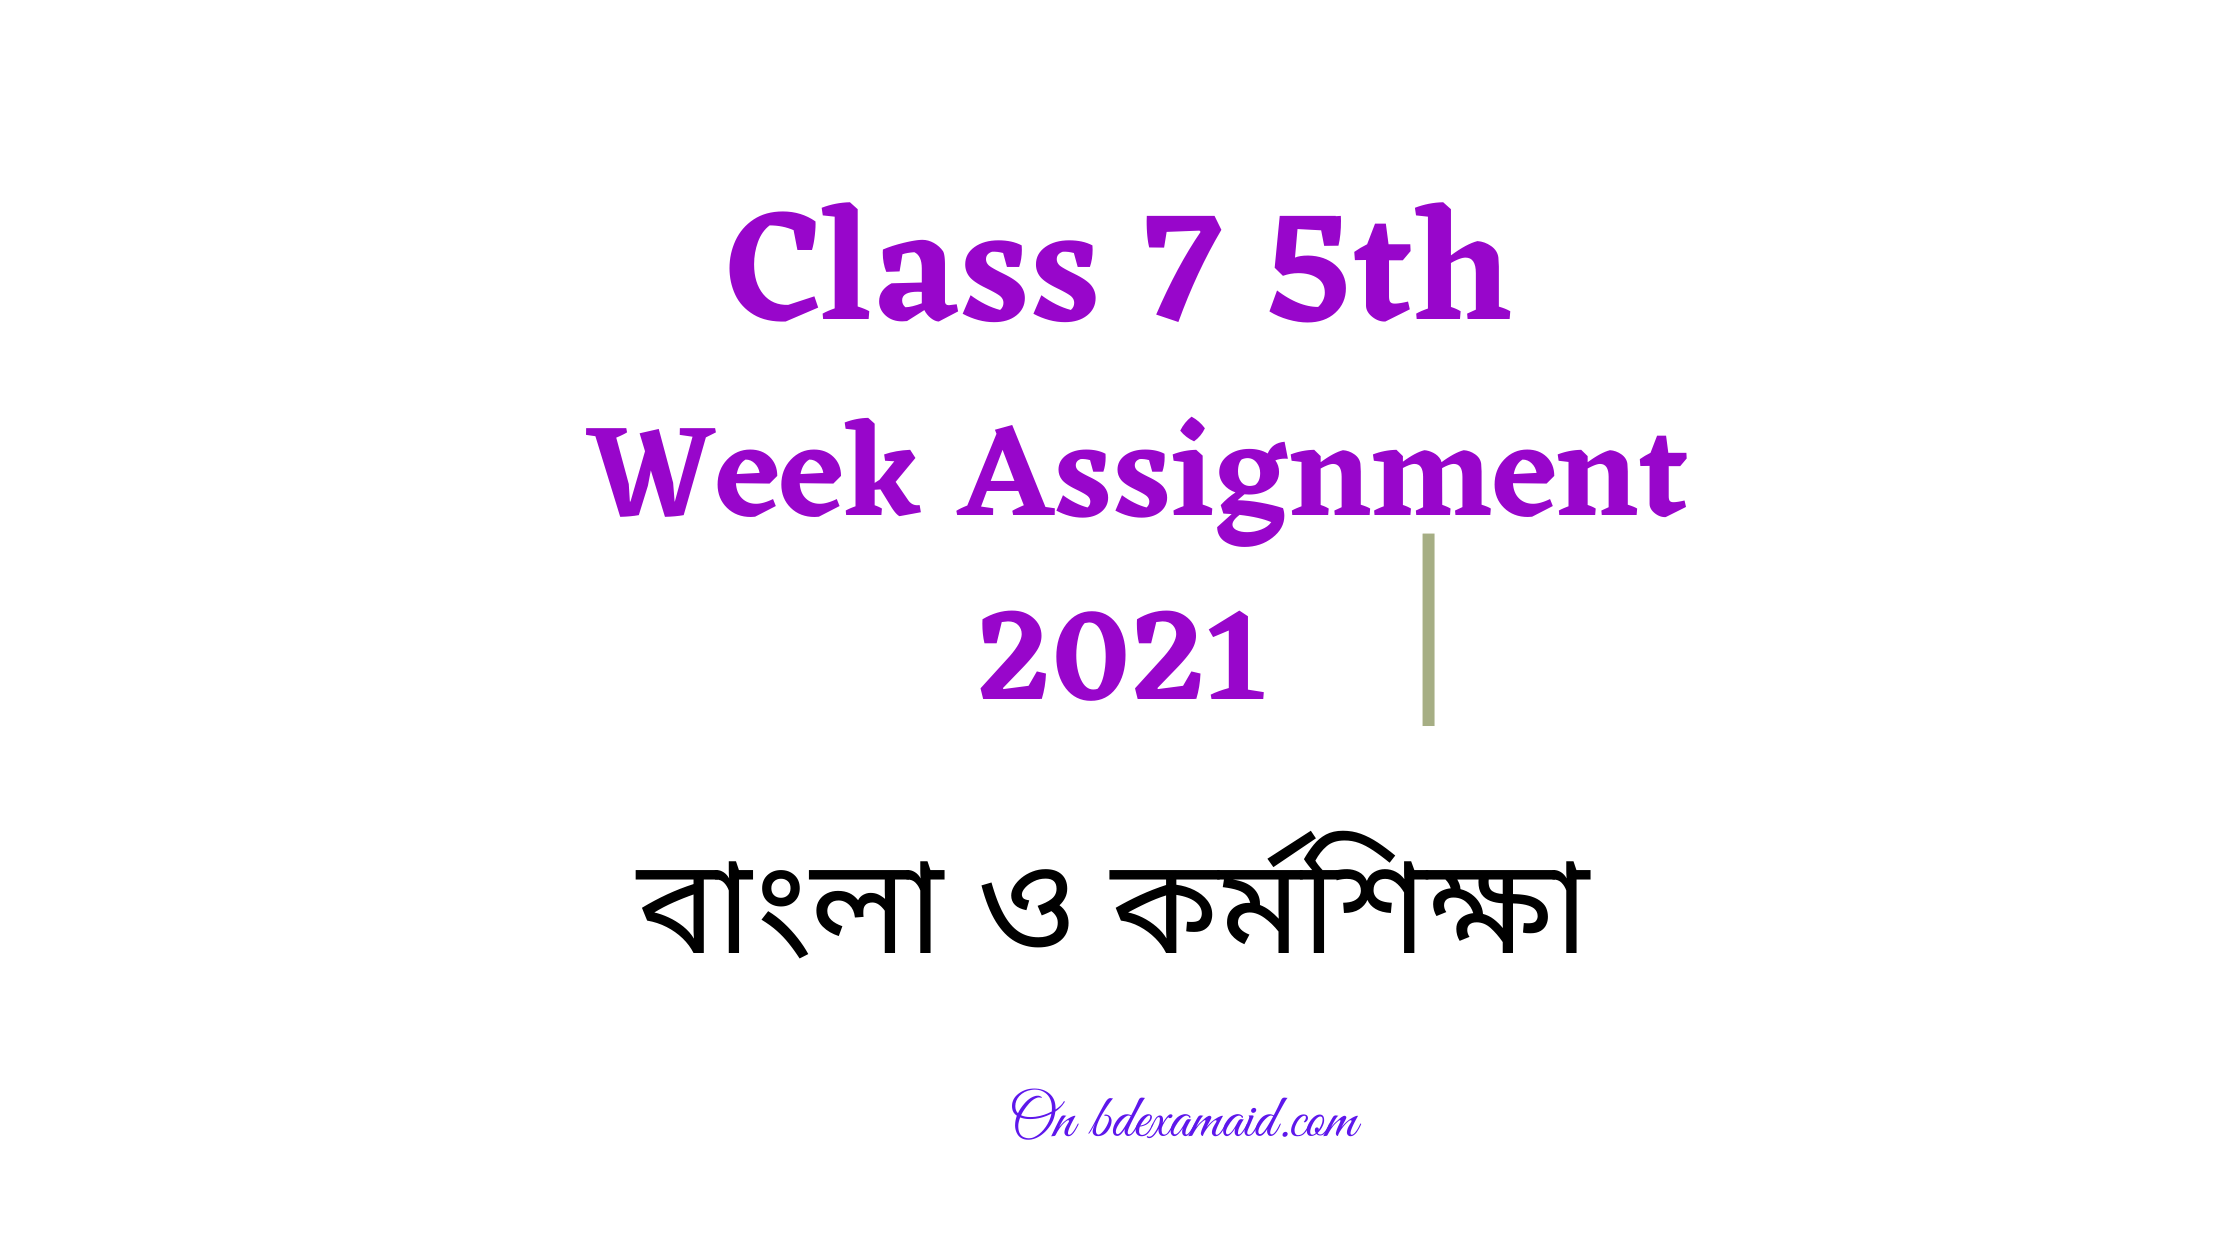 class 7 assignment 5th week 2021